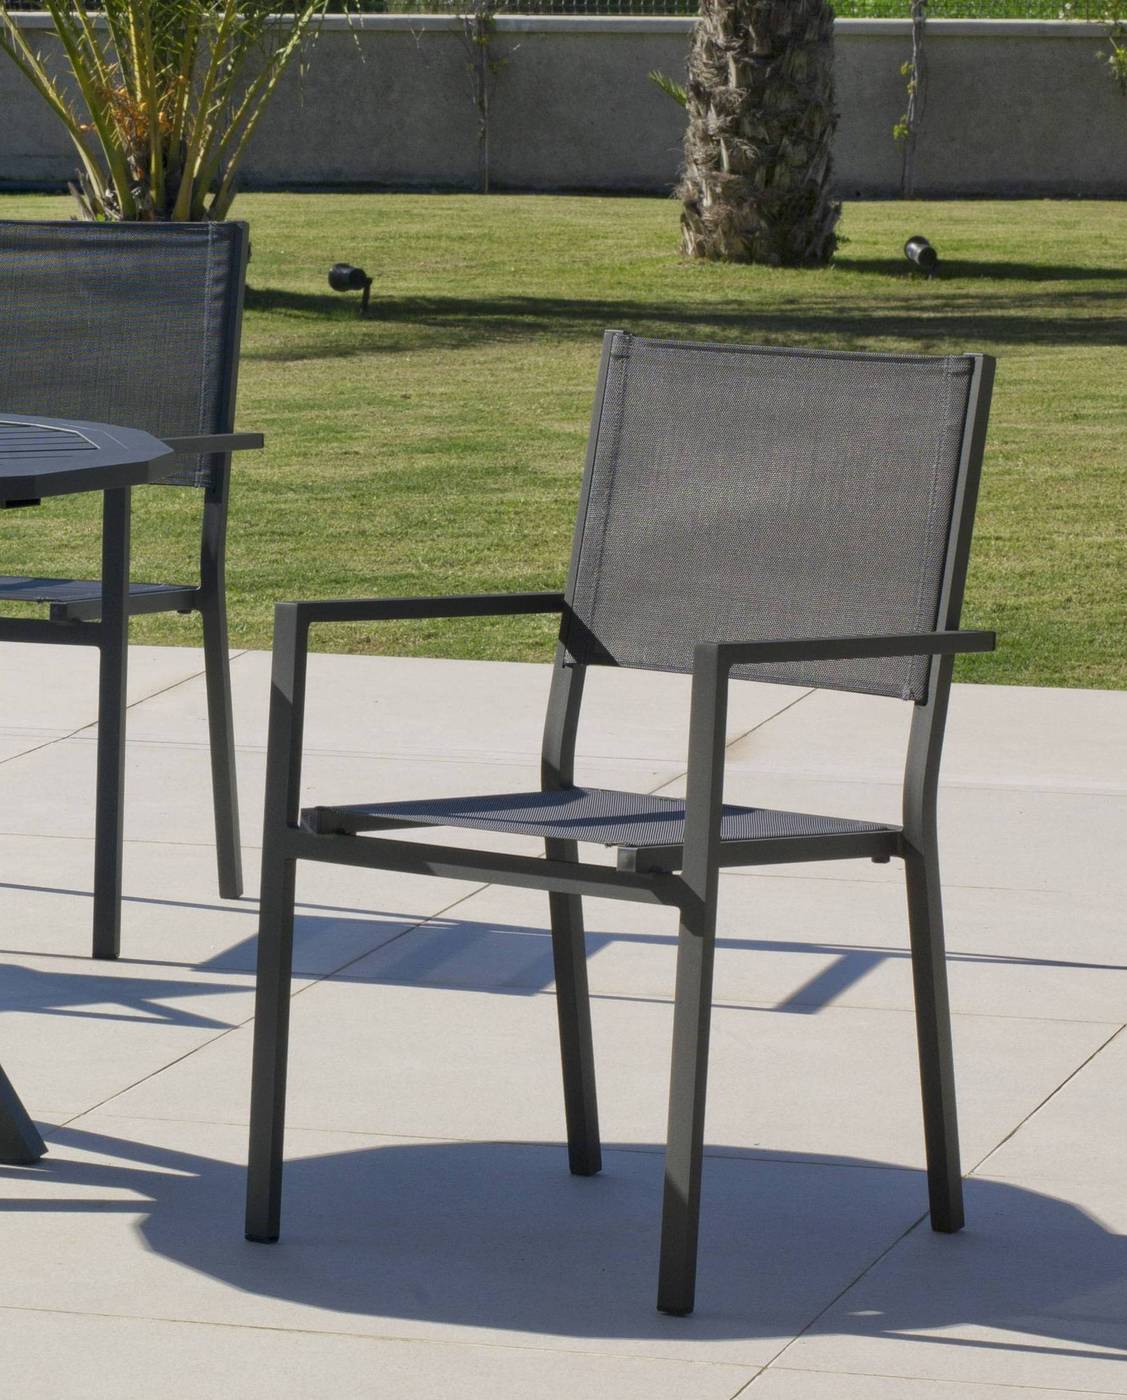 Set Aluminio Córcega 160-4 - Conjunto aluminio para jardín: Mesa rectangular 160 cm + 4 sillones de textilen. Disponible en color blanco, plata y antracita.